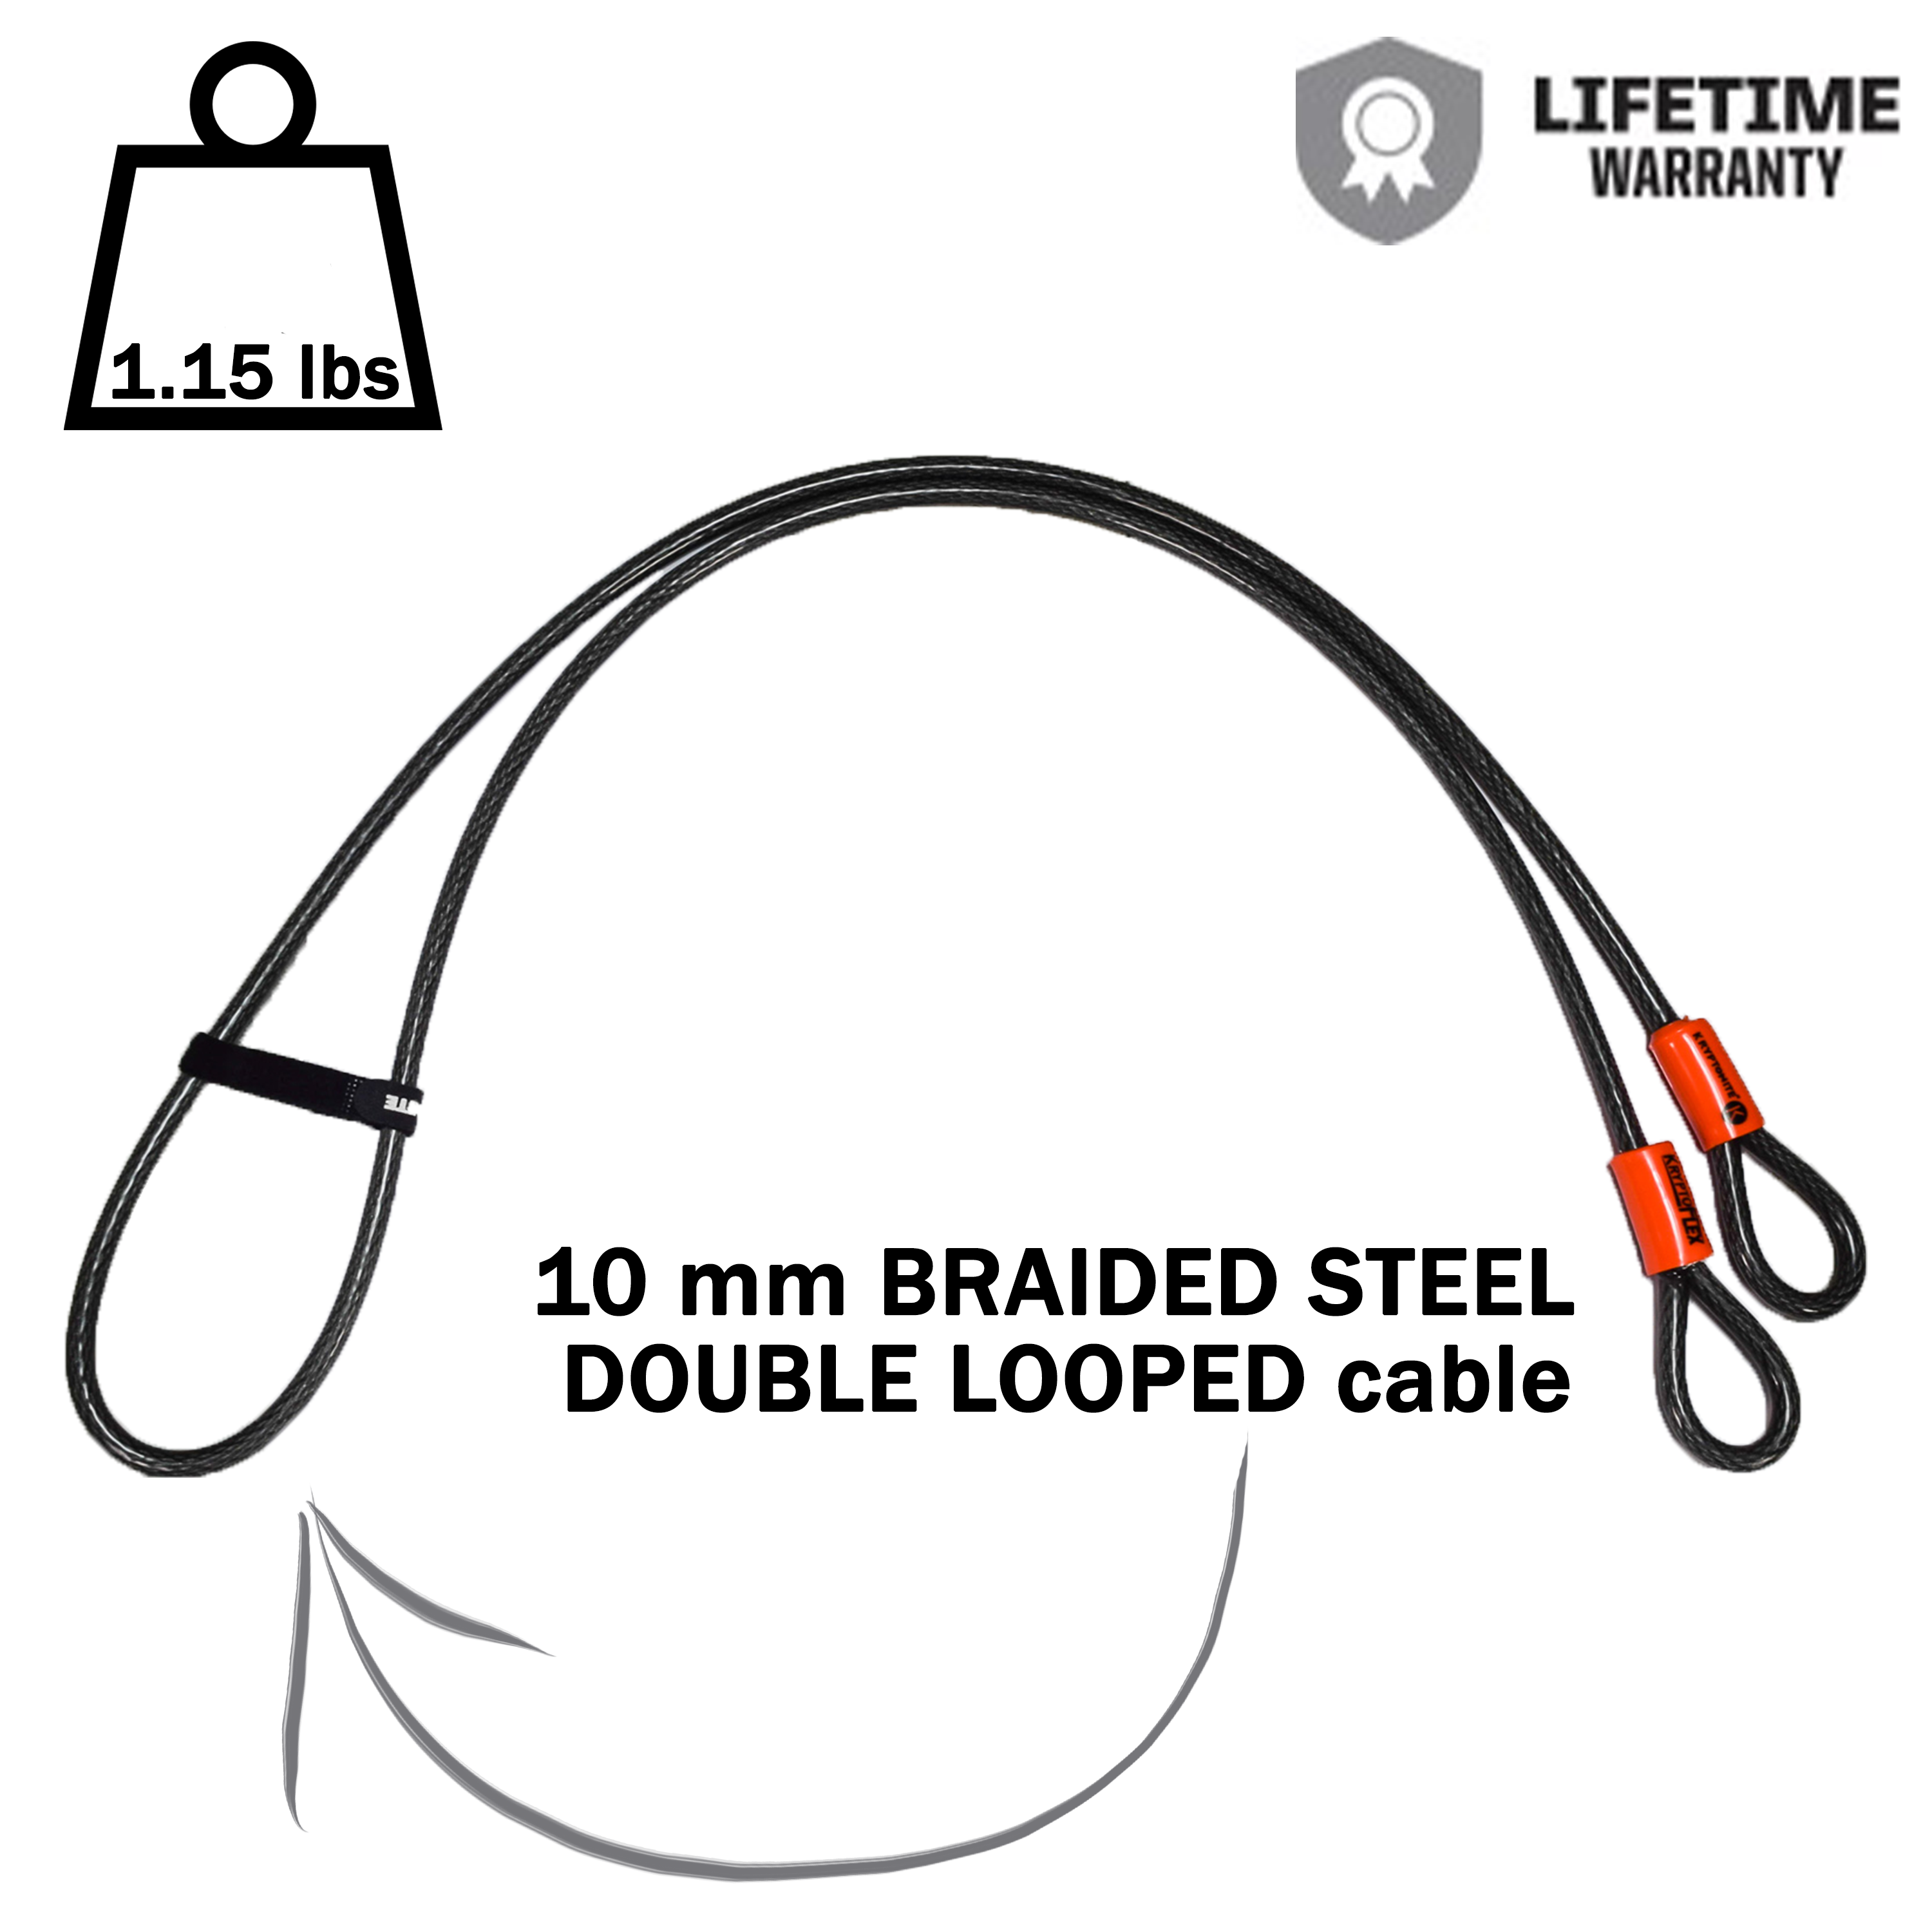 Kryptonite 210818 KryptoFlex 410 Double Looped Braided Steel cable